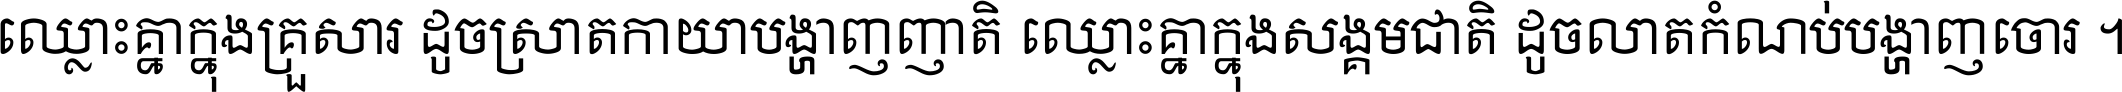 Khmer Chhay Text 6